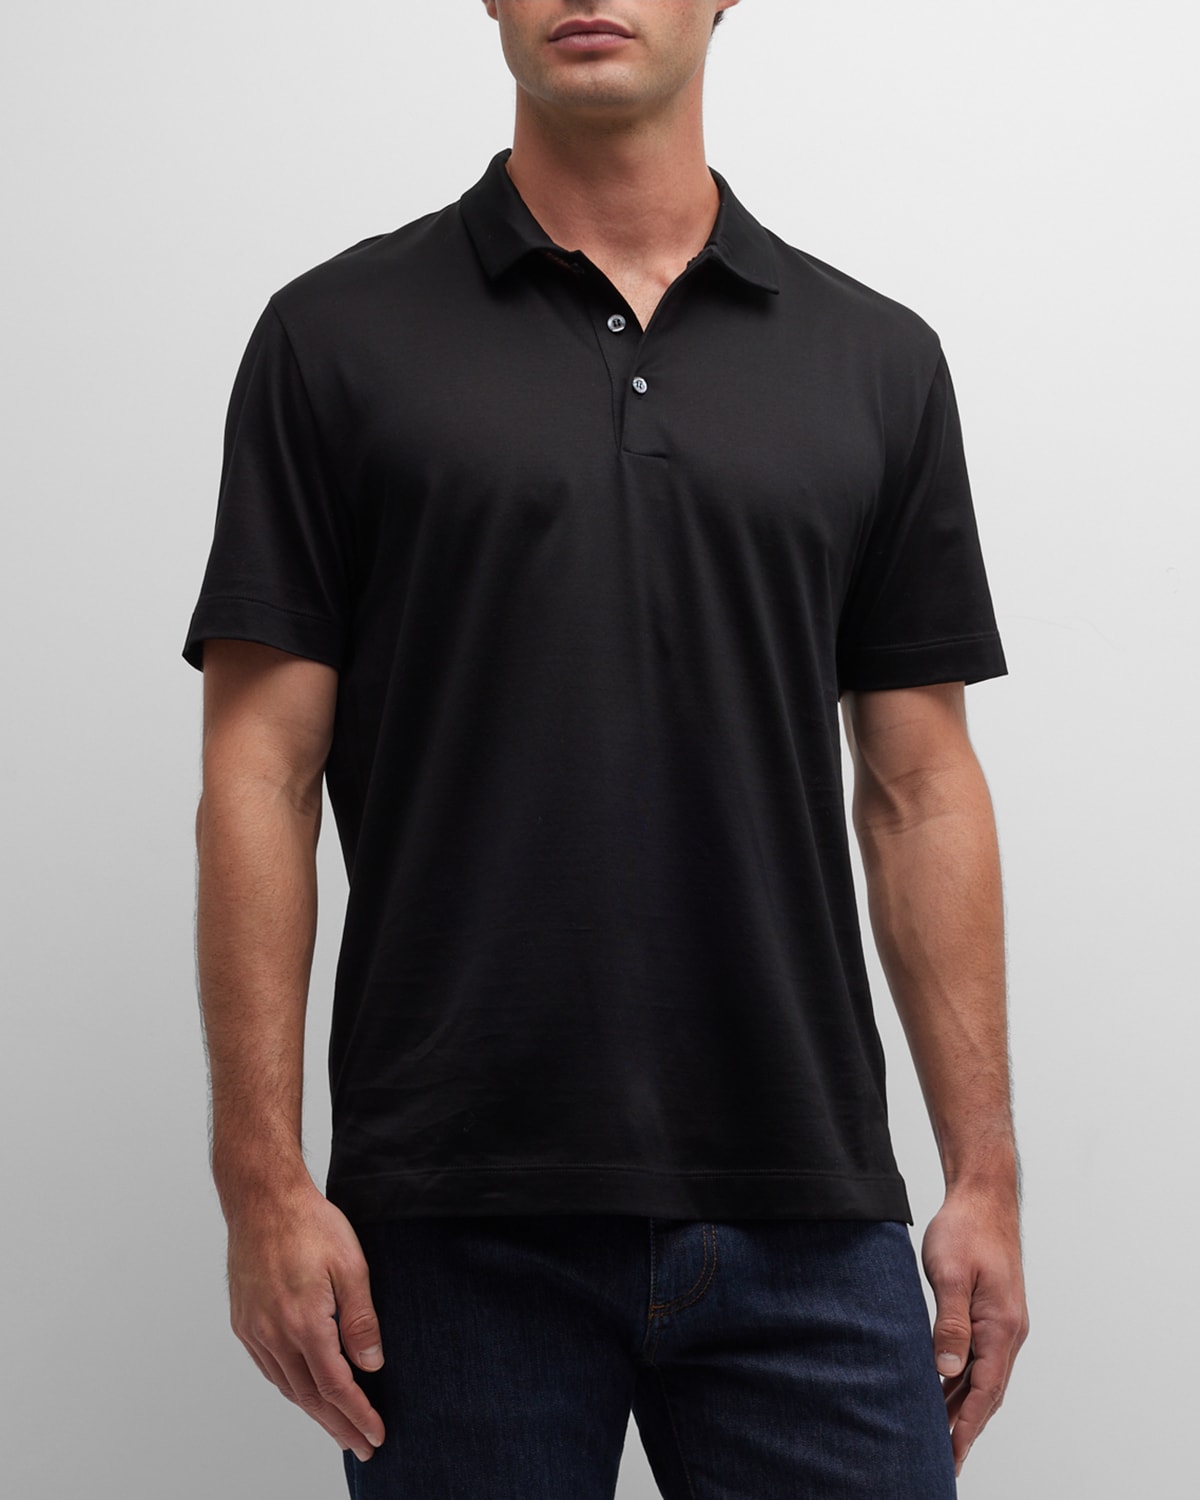 Men's Interlock Knit Polo Shirt